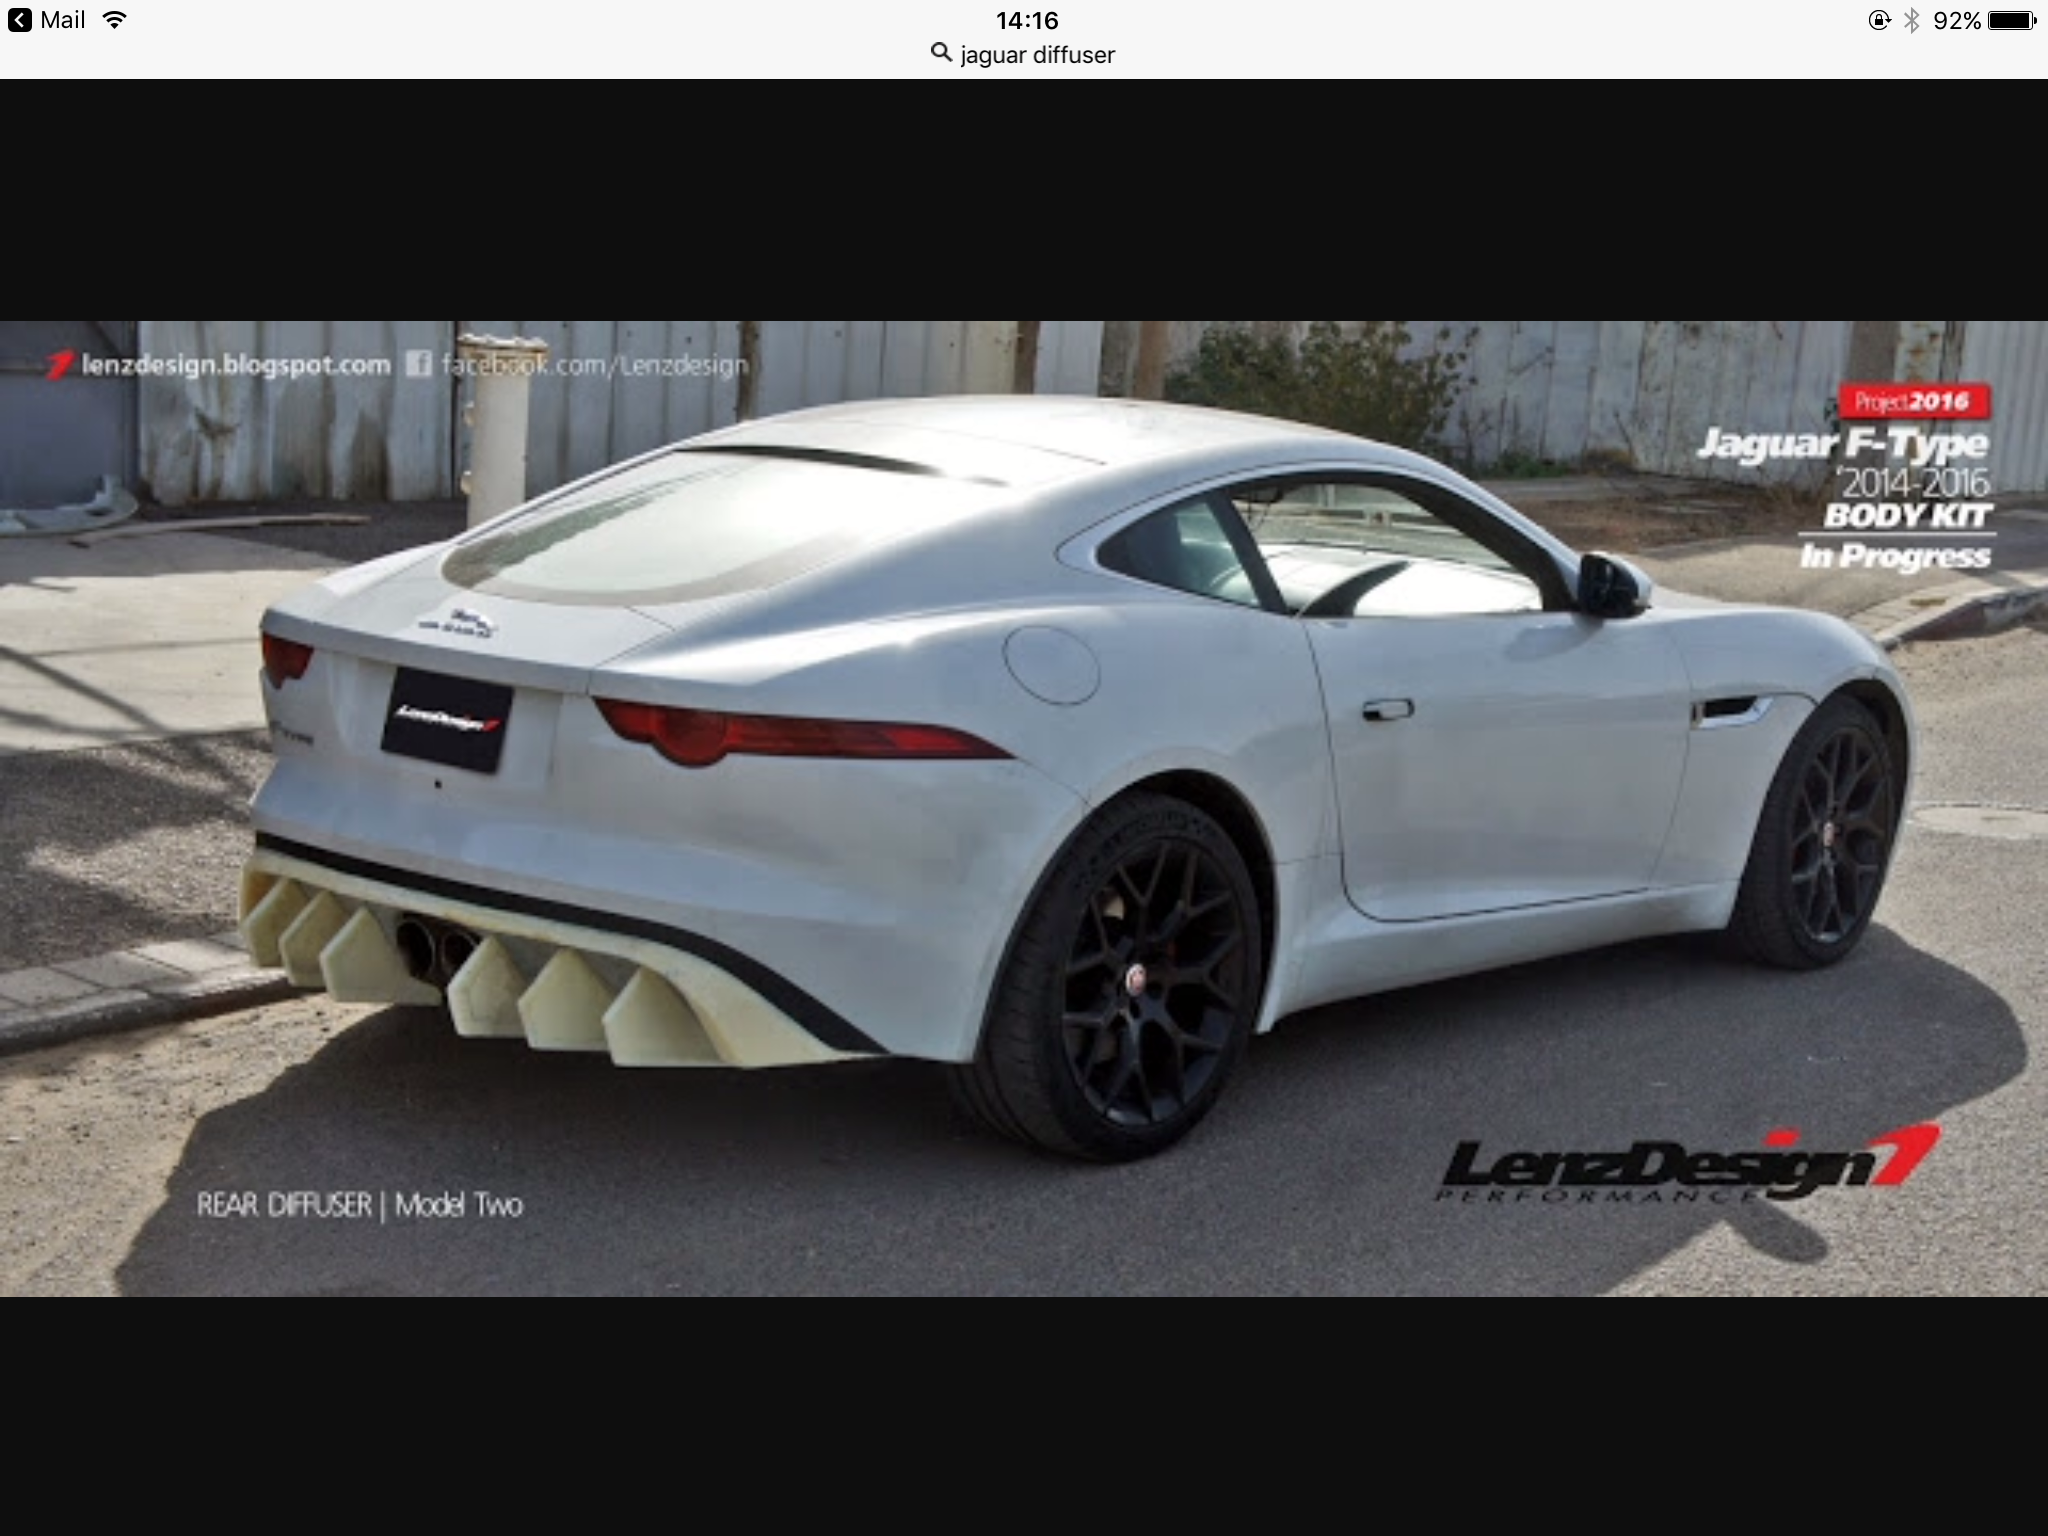 F-type car cover? - Page 2 - Jaguar Forums - Jaguar Enthusiasts Forum